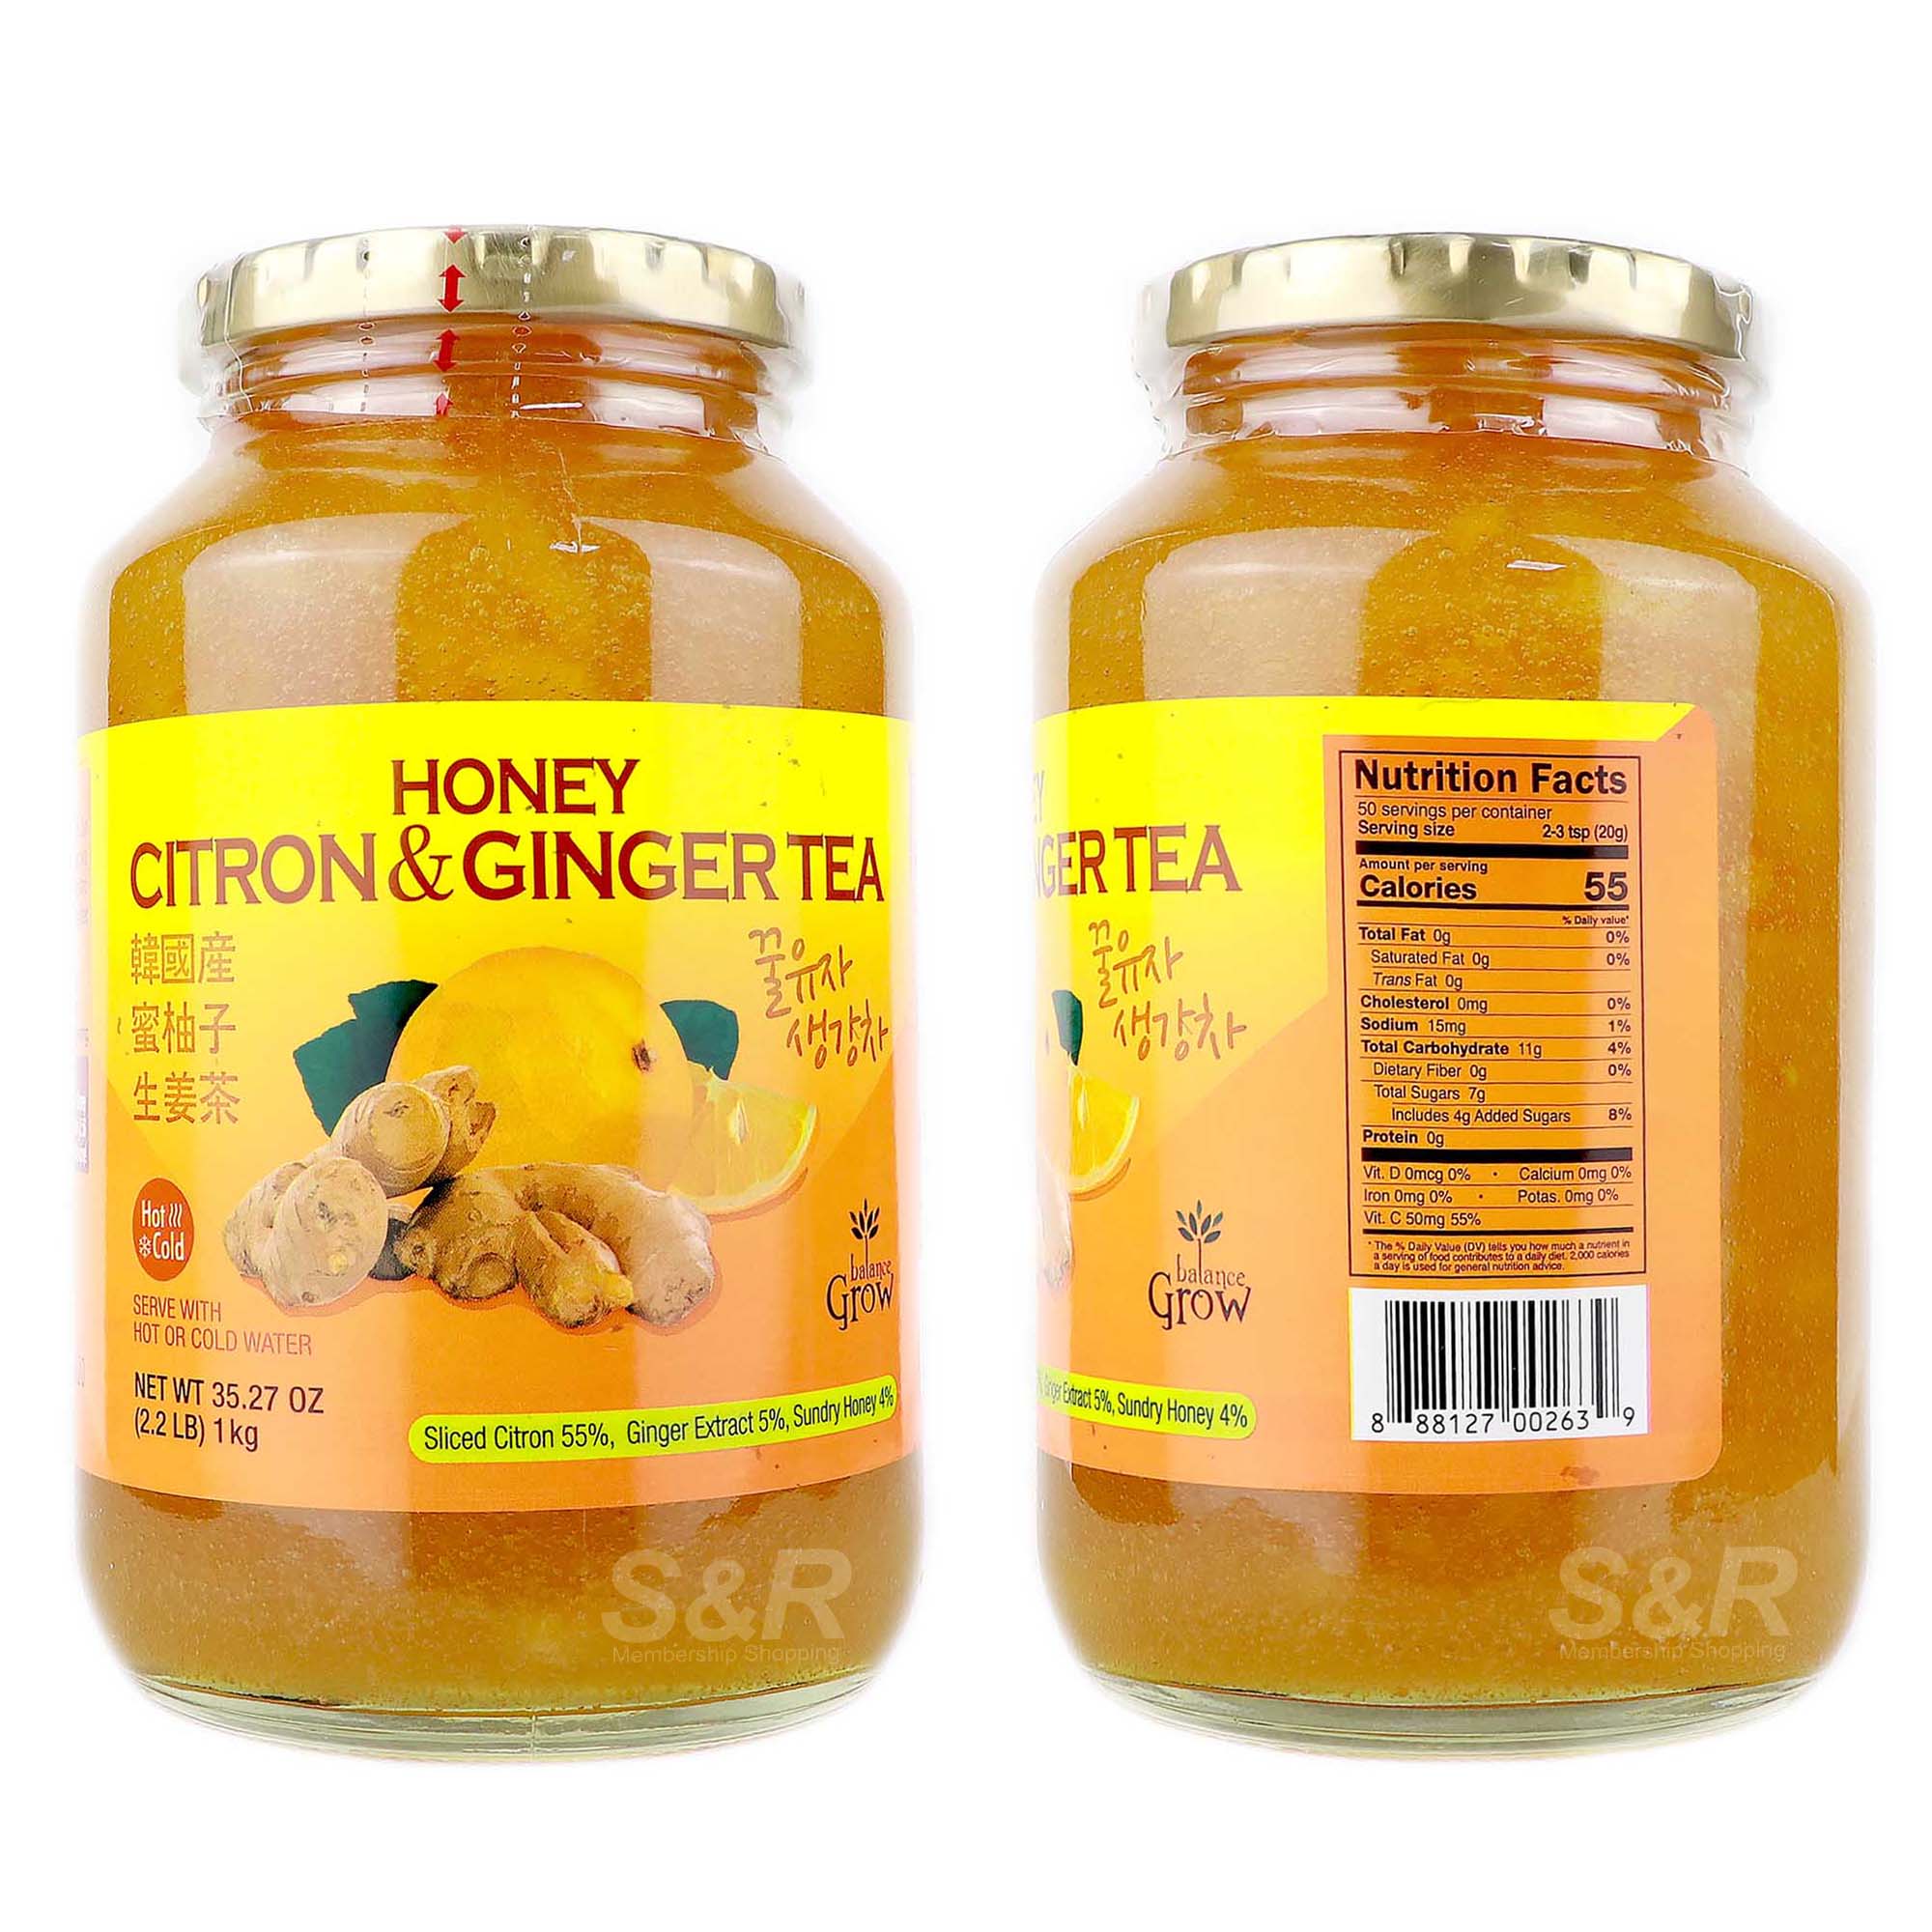 Honey Citron & Ginger